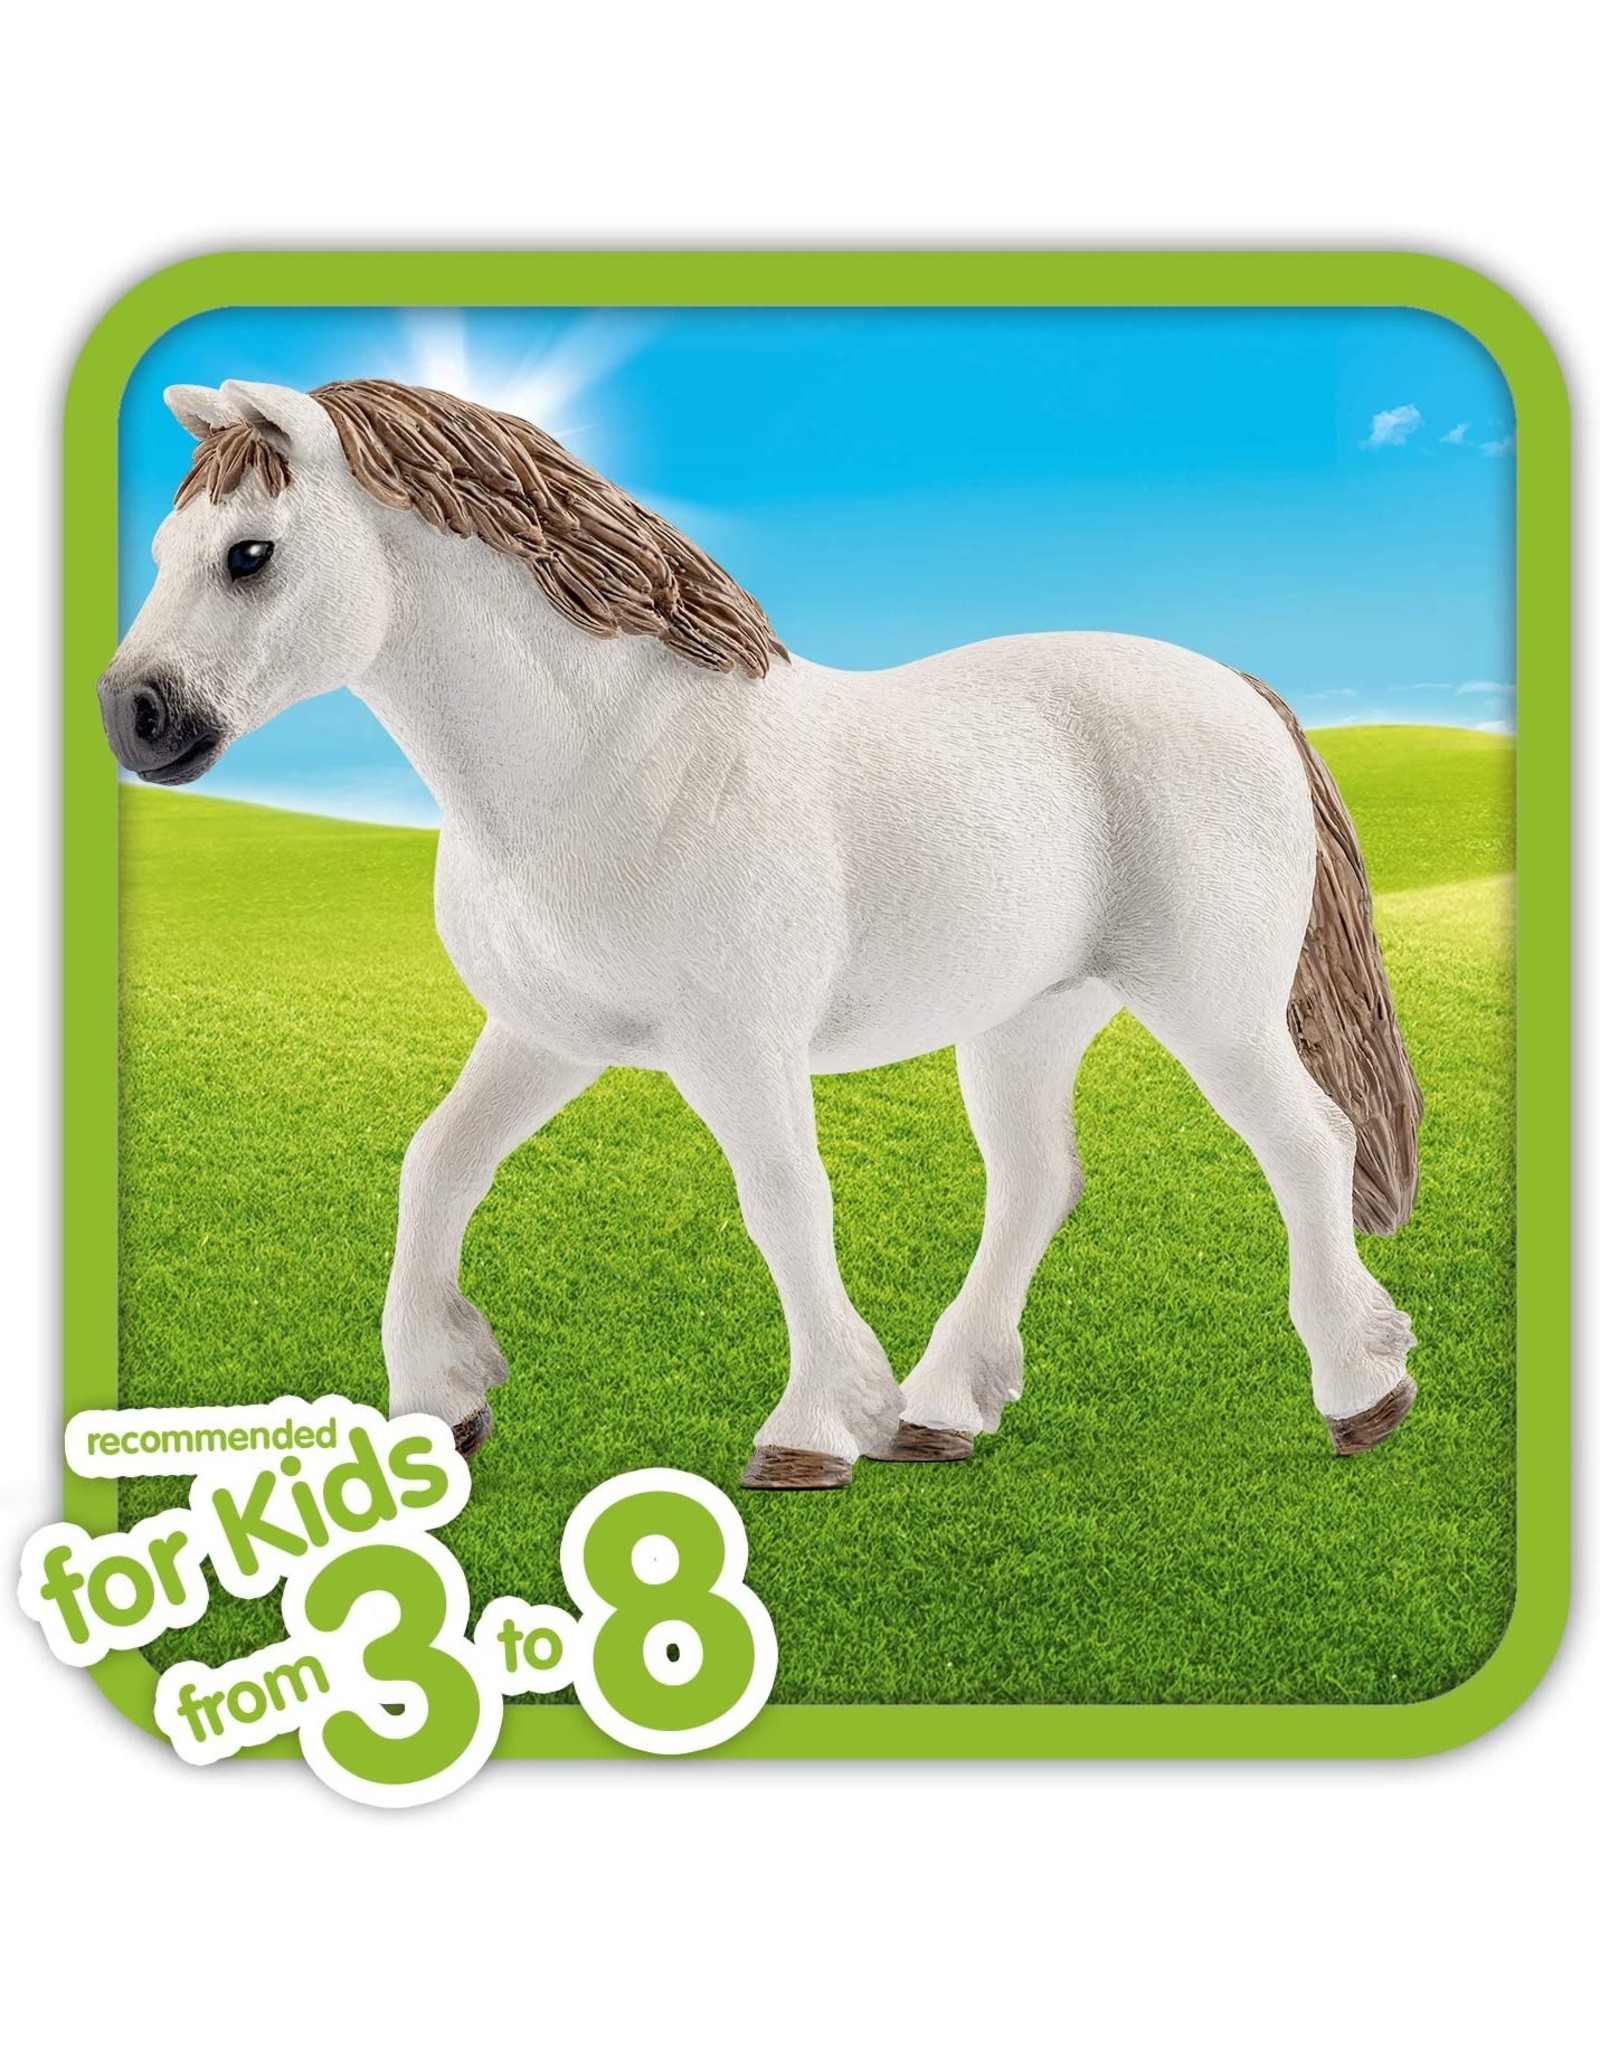 Schleich Welsh Pony Mare Toy Figurine